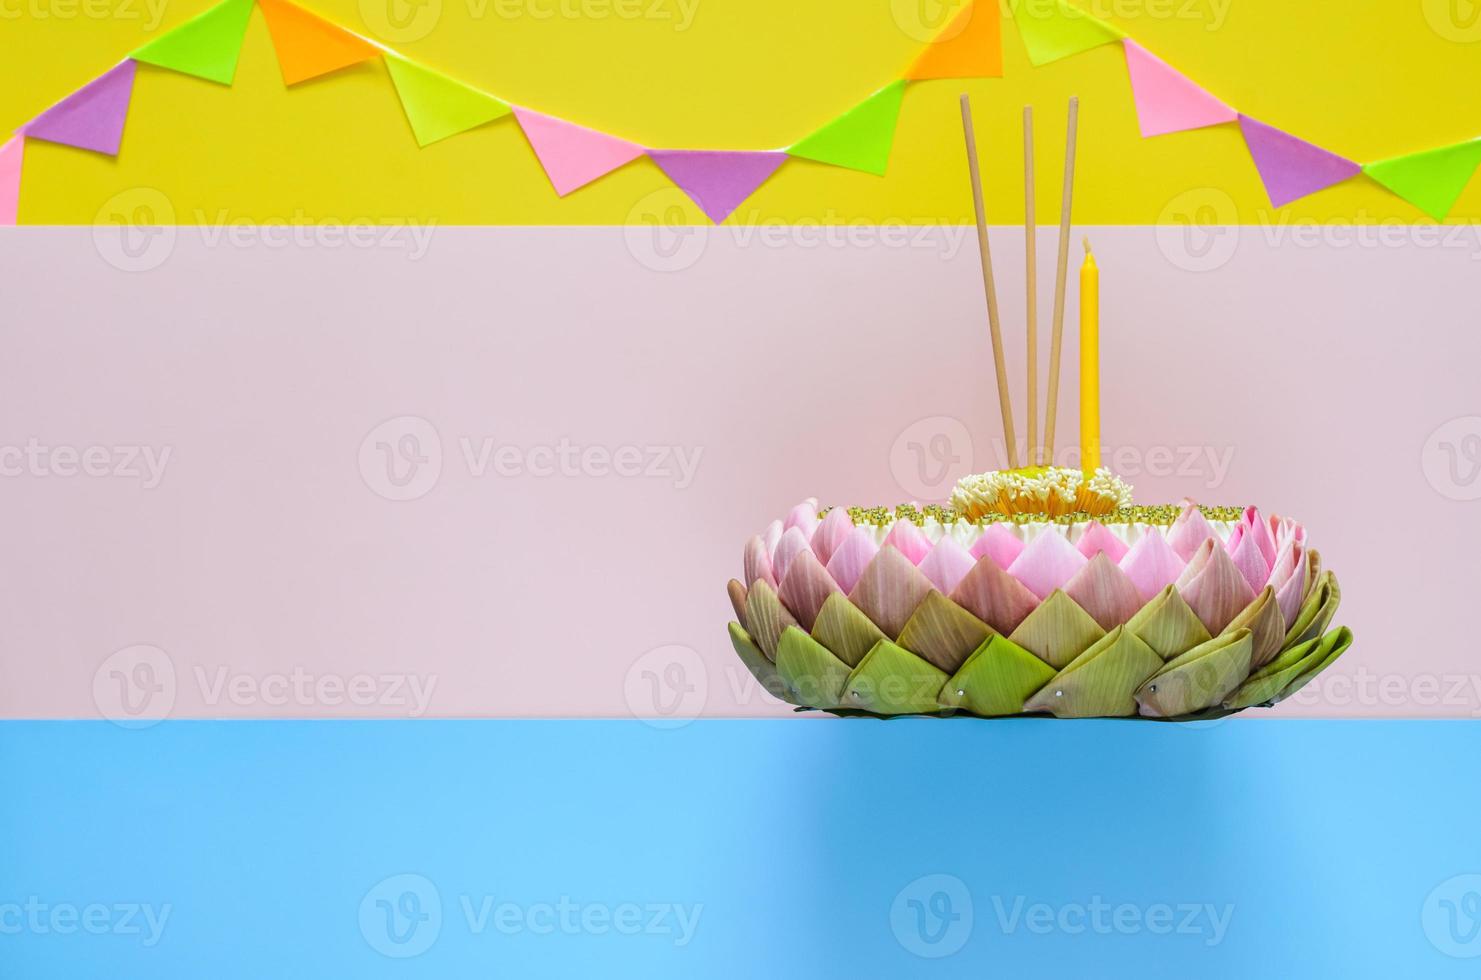 enfoque selectivo en el polen de loto sobre el krathong de pétalos de loto rosa con flor de corona, palo de incienso y vela para el festival de krathong loy de tailandia sobre fondo colorido con bandera de fiesta. foto